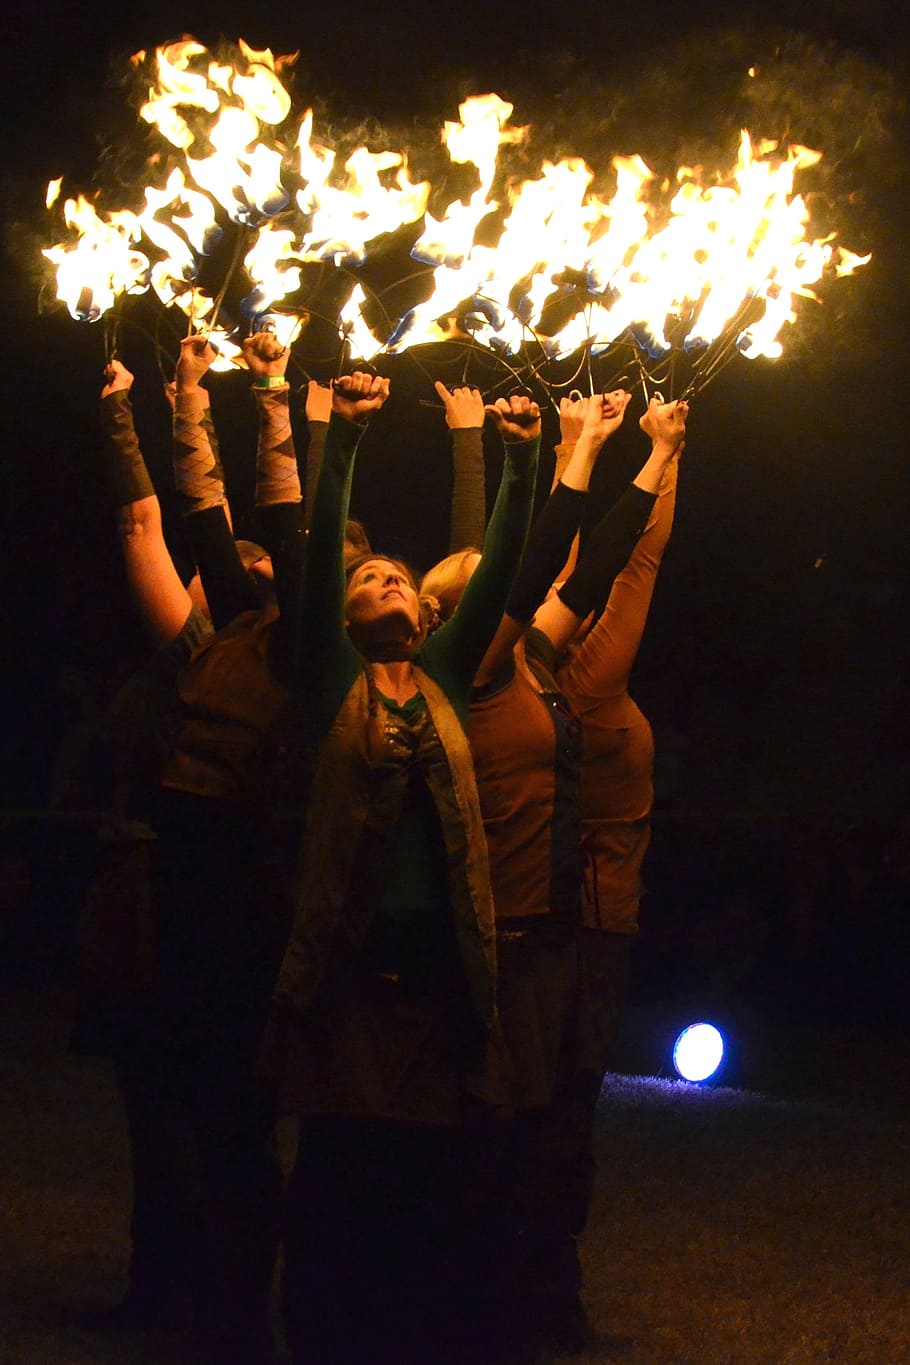 festival celta, danza del fuego, celta, festival, entretenimiento celta, noche, llama, ardor, parte del cuerpo humano, calor - temperatura